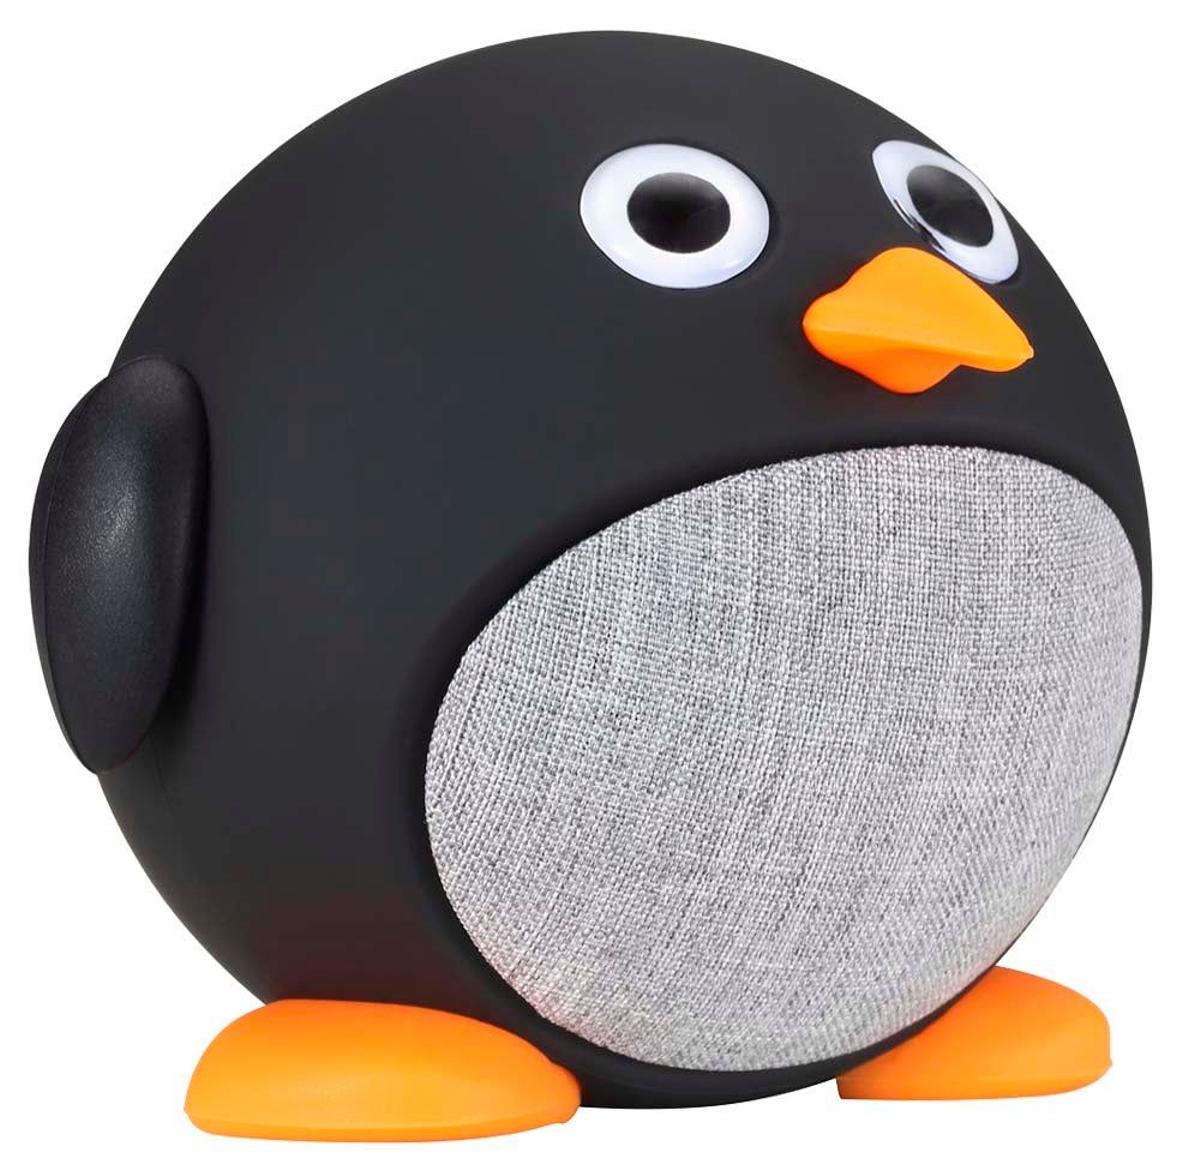 Altavoz con forma de pingüino (Precio: 25 euros)